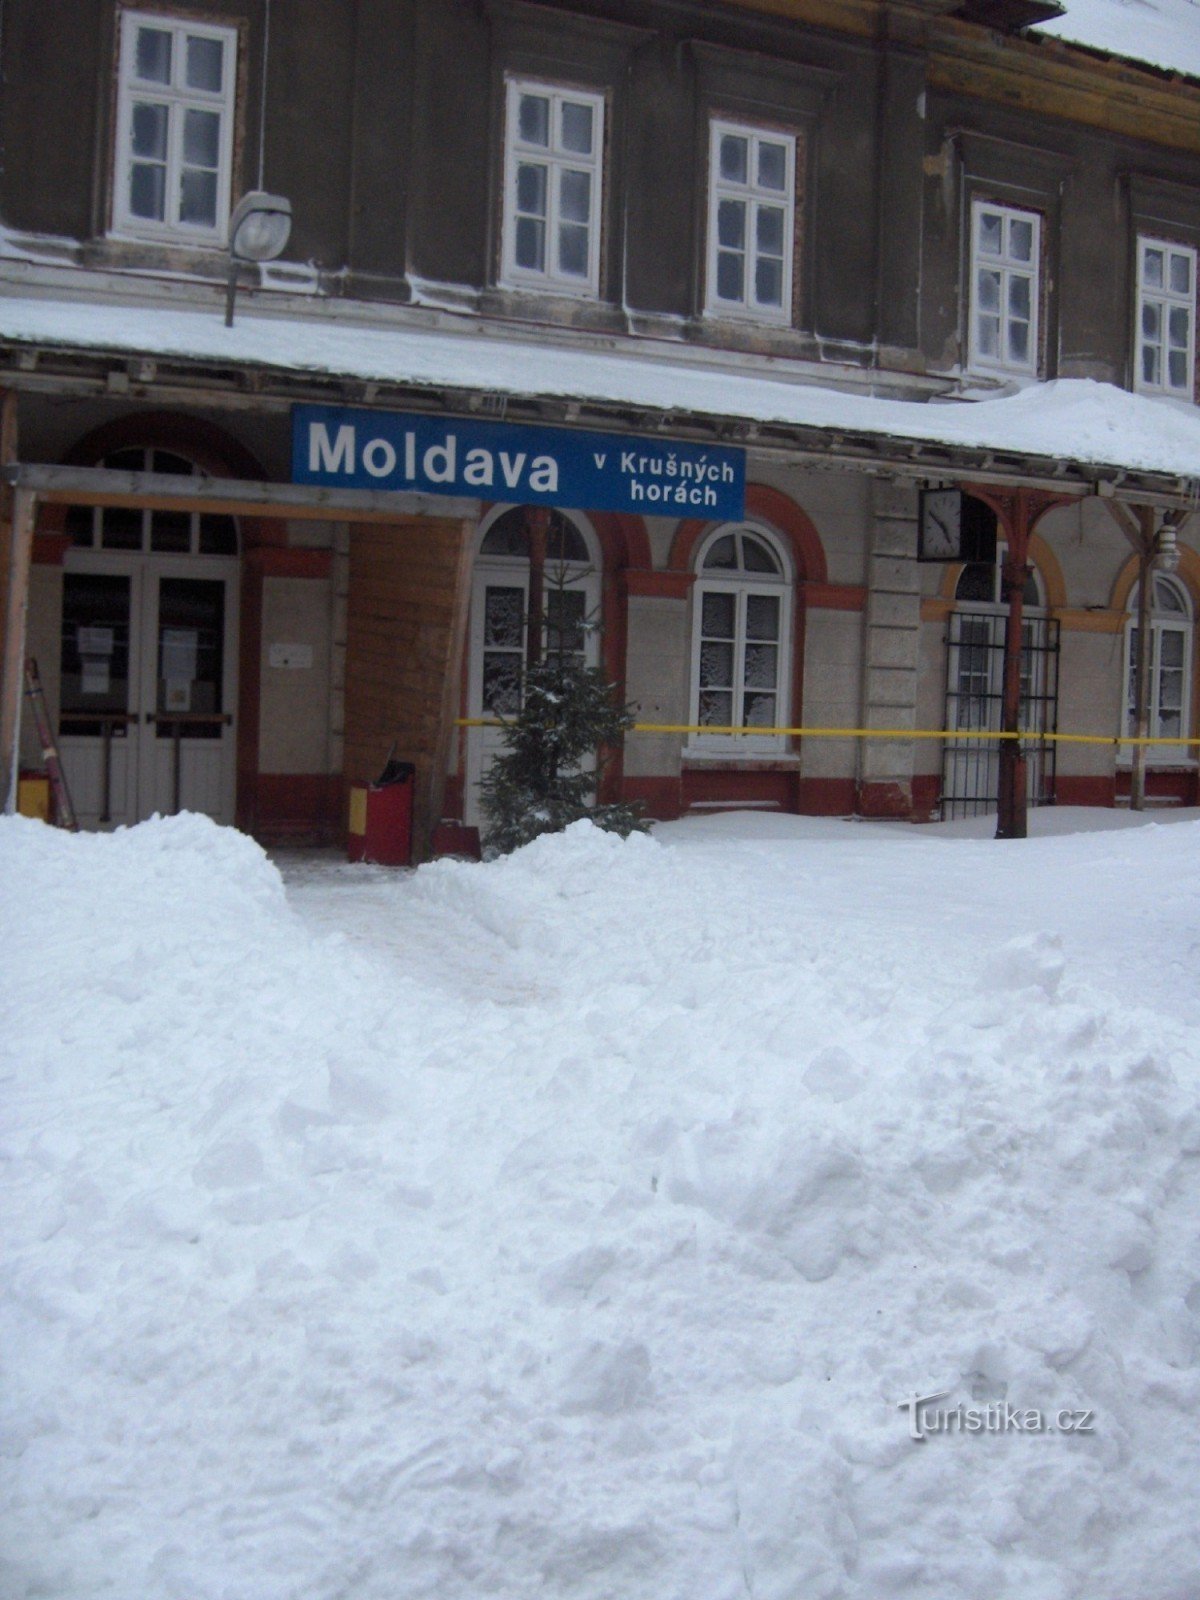 Moldavas järnvägsstation